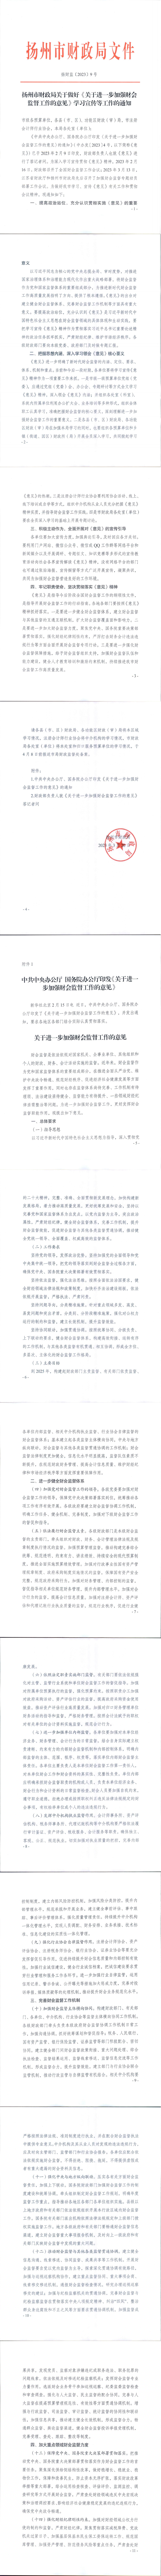 扬州市财政局关于做好《关于进一步加强财会监督工作的意见》学习宣传等工作的通知_00.jpg